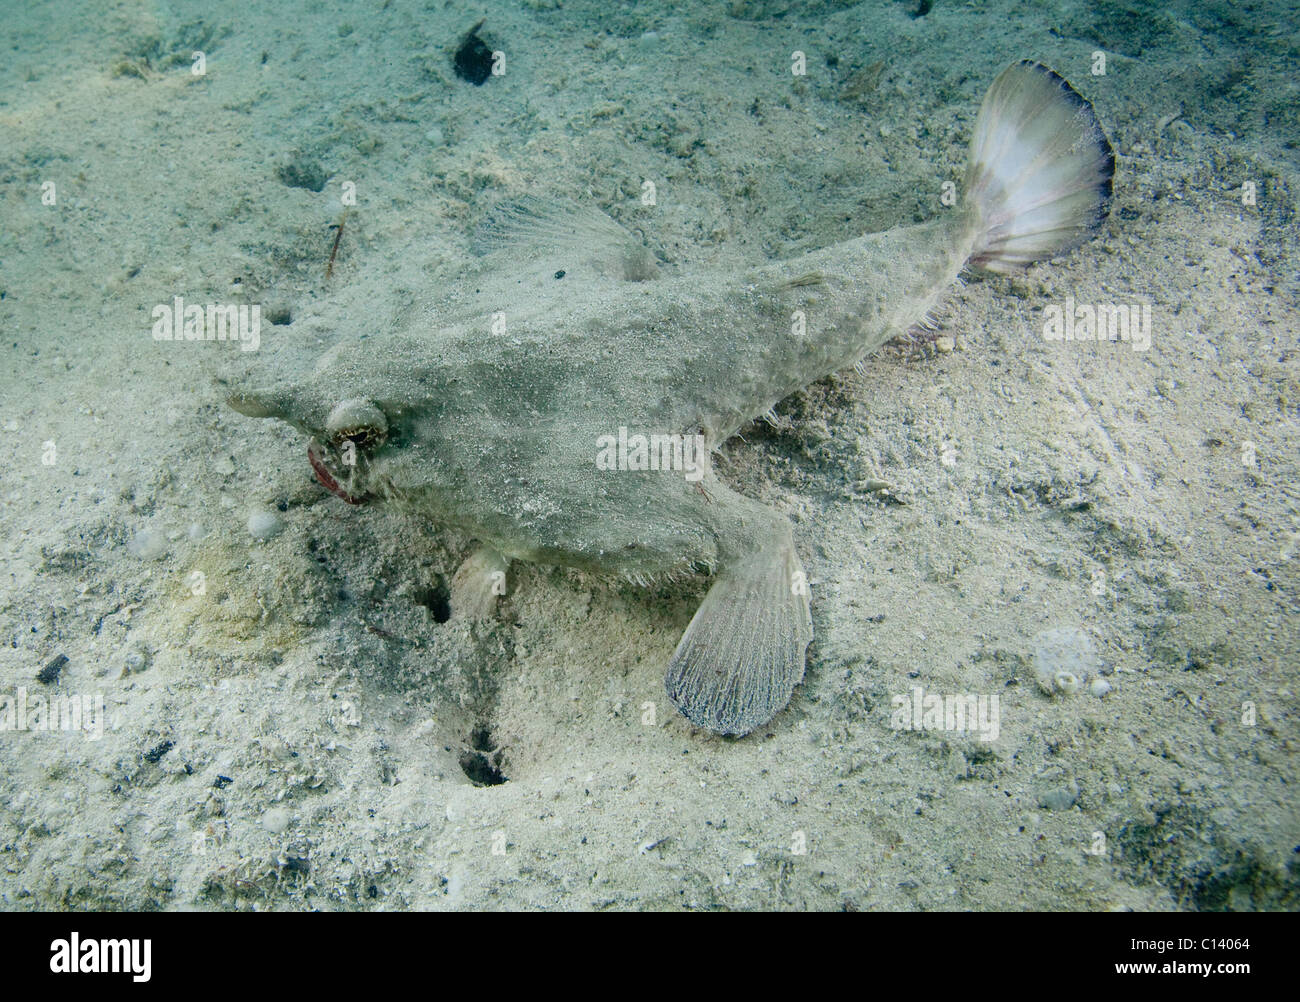 Un platax à museau court (Ogcocephalus nasutus) trys pour se fondre dans le sable au Belize. Banque D'Images